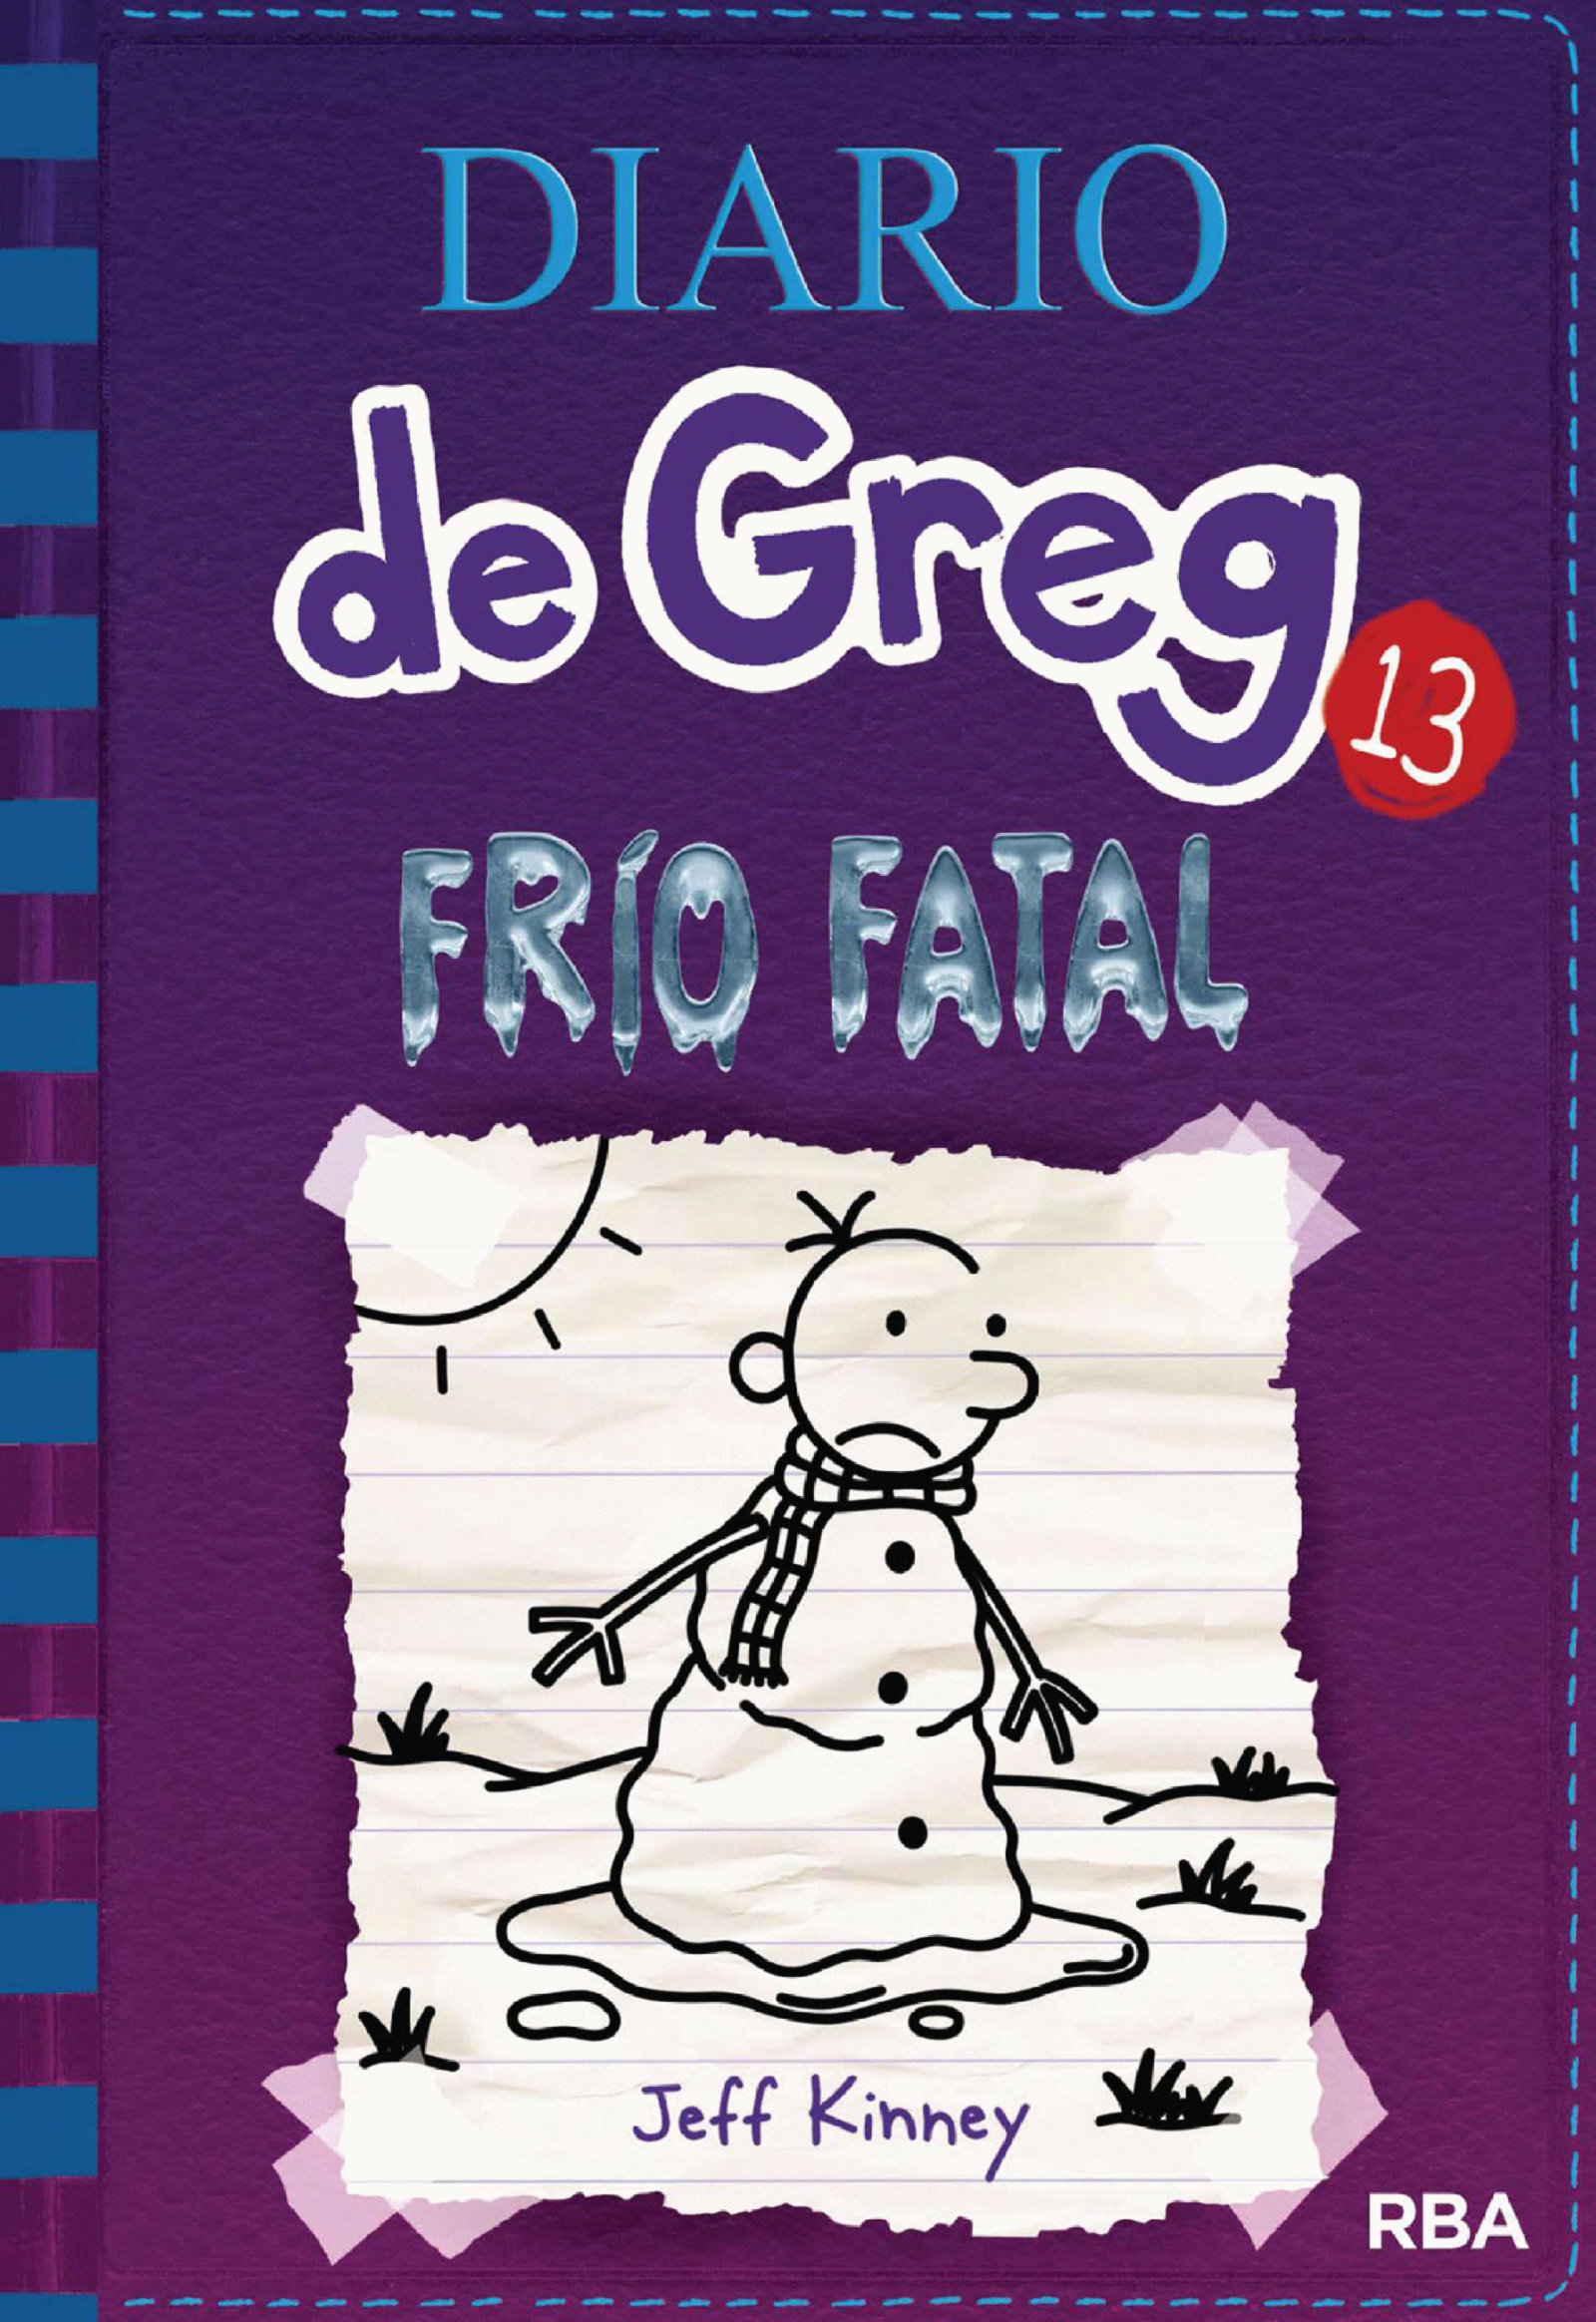 Diario de Greg 13 - Frío fatal